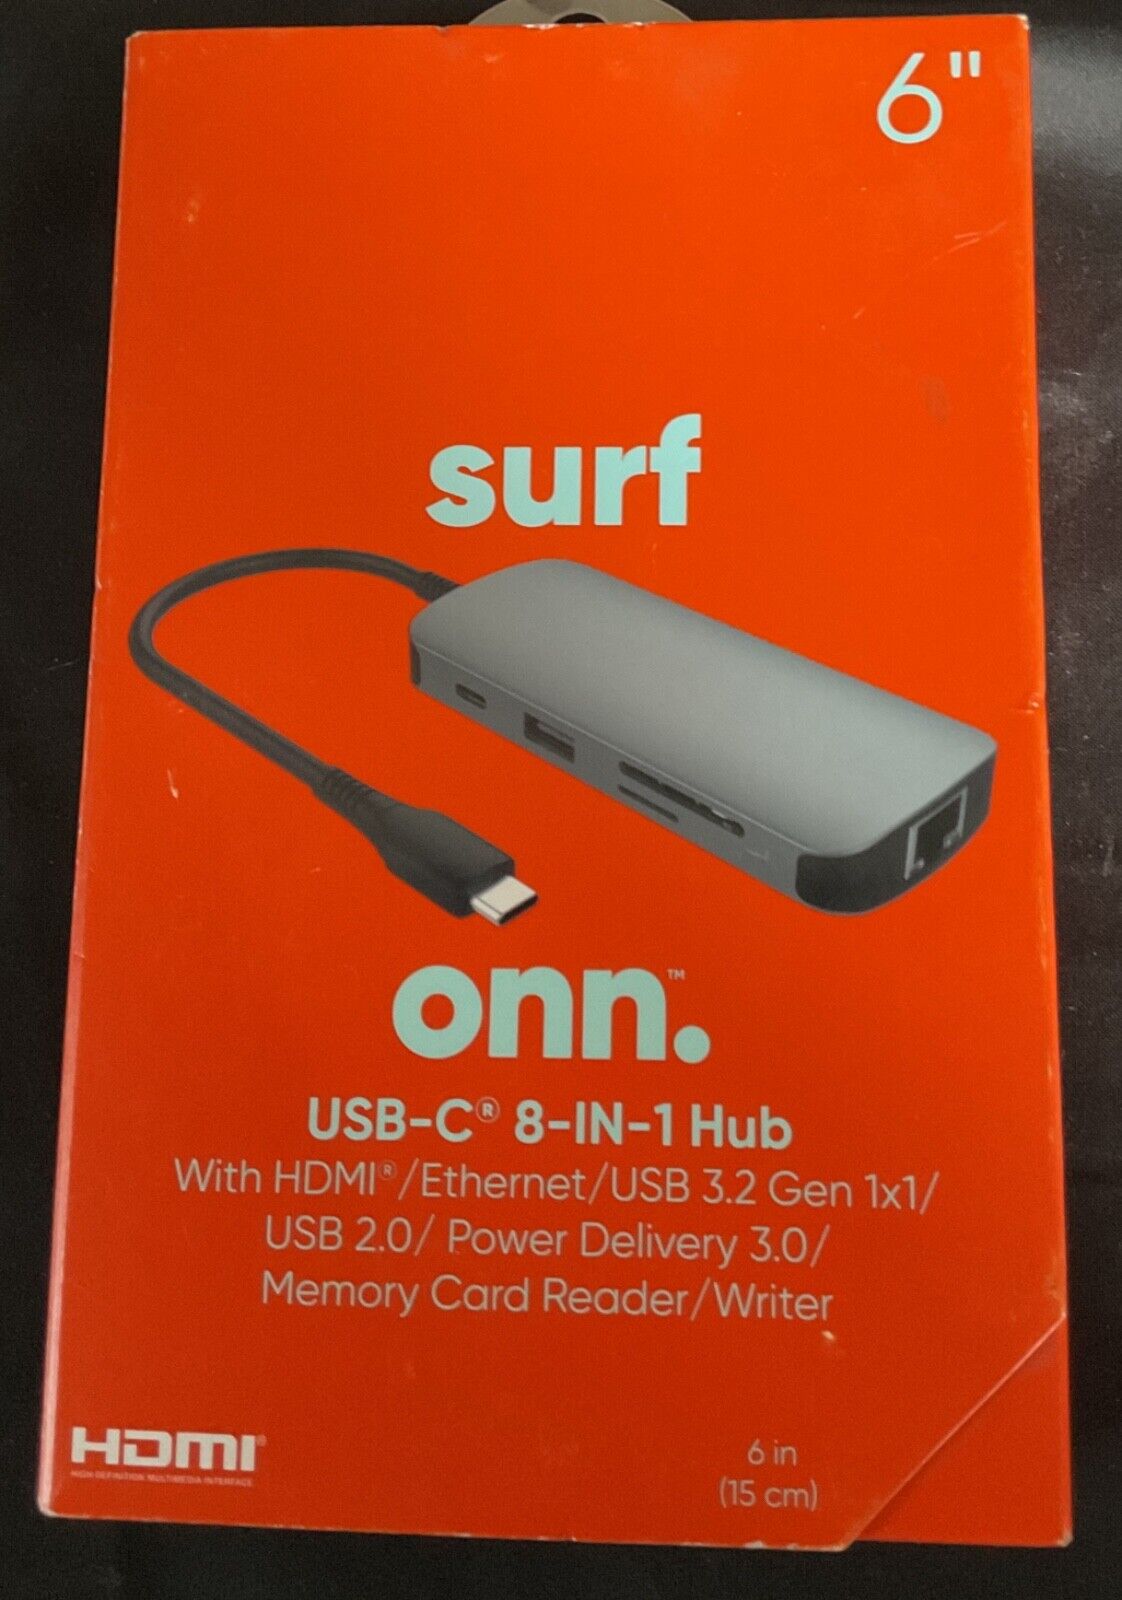 NEW ONN USB-C 8-in-1 Hub w/ HDMI Ethernet USB 3.2 USB 2.0 Memory Card Reader